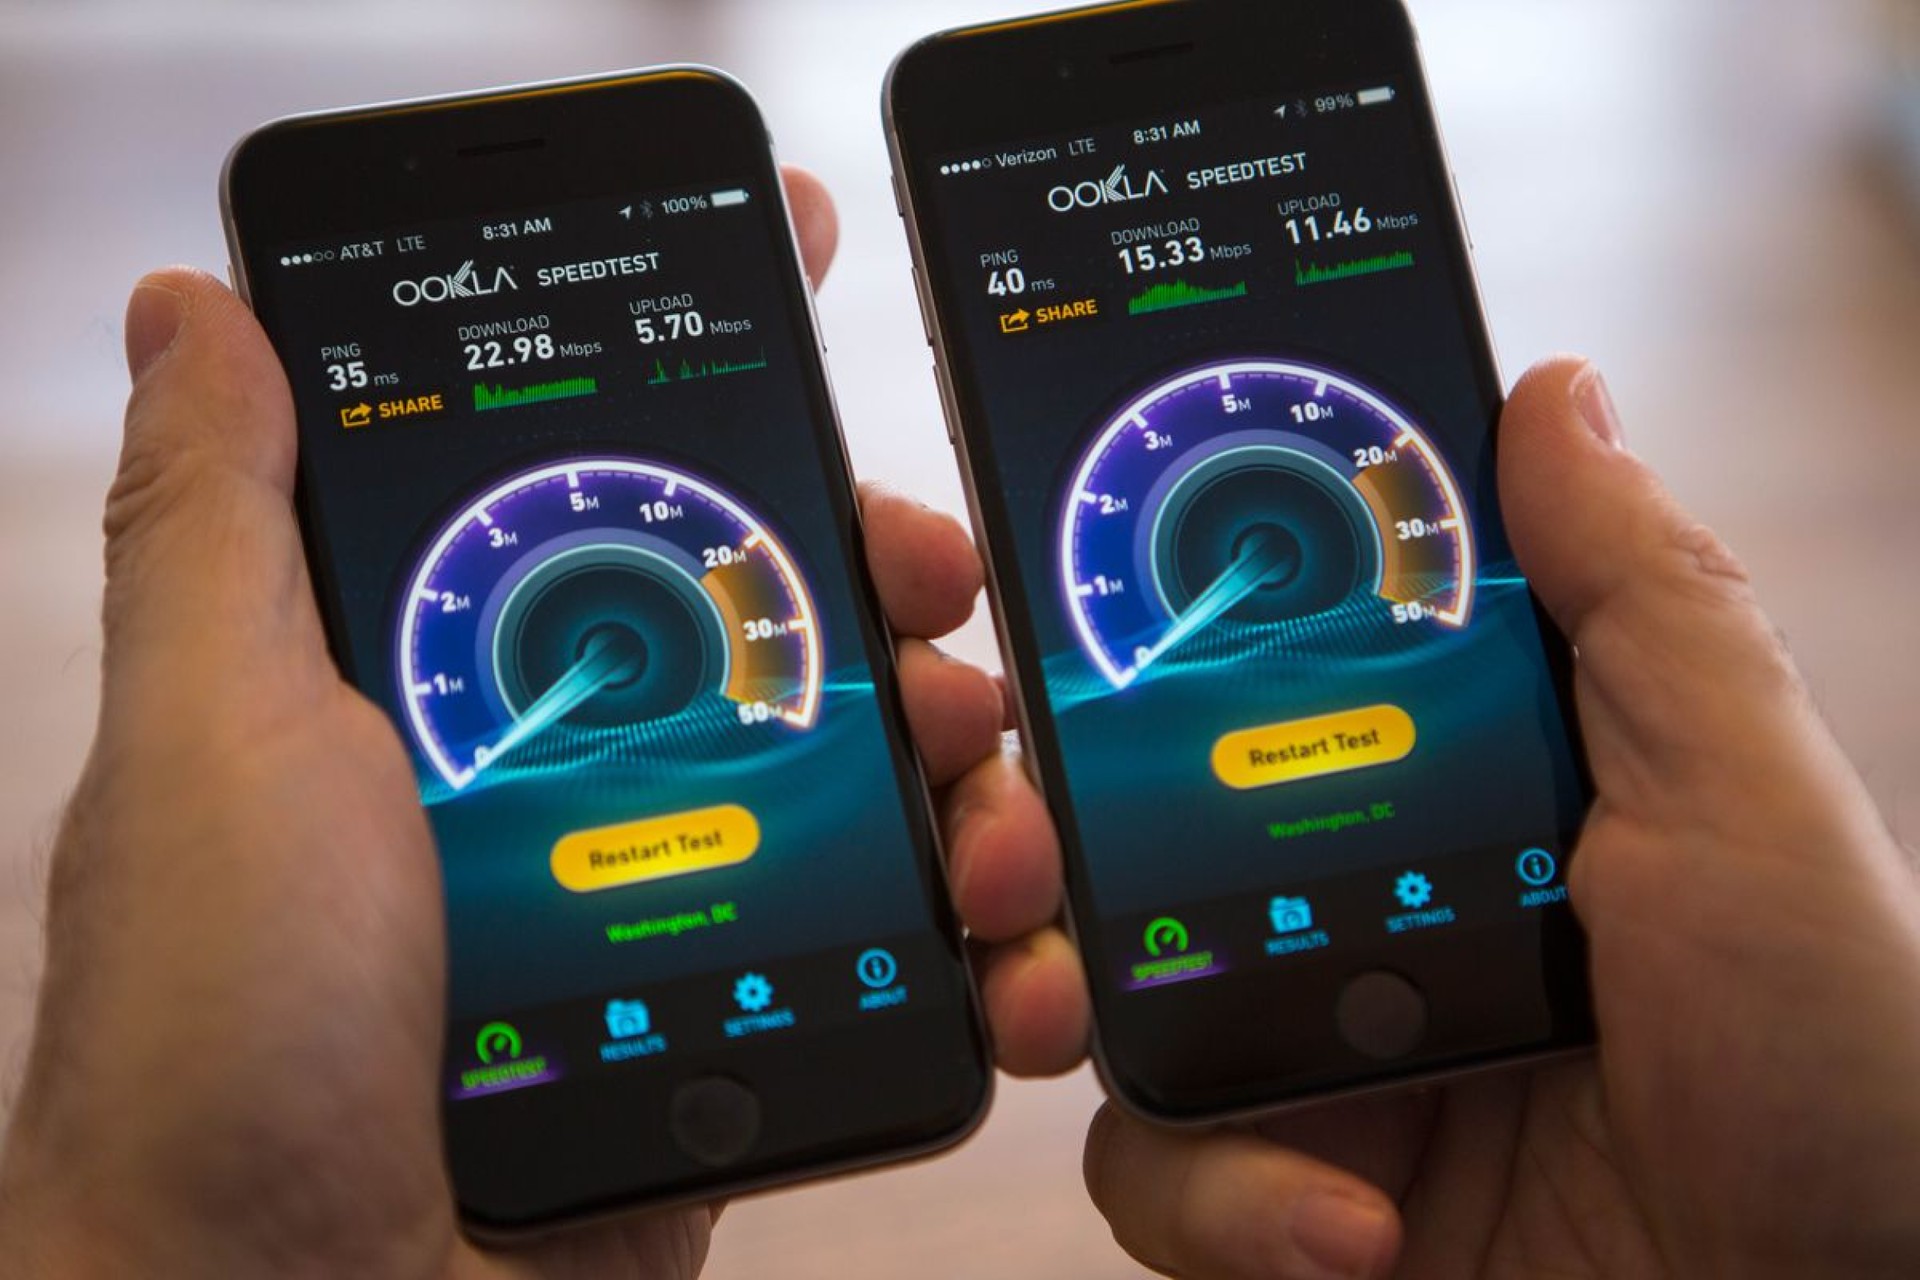 Беспроводной мобильный интернет. Скоростной мобильный интернет. Скорость мобильного интернета. Самый быстрый мобильный интернет. Высокоскоростной мобильный интернет.